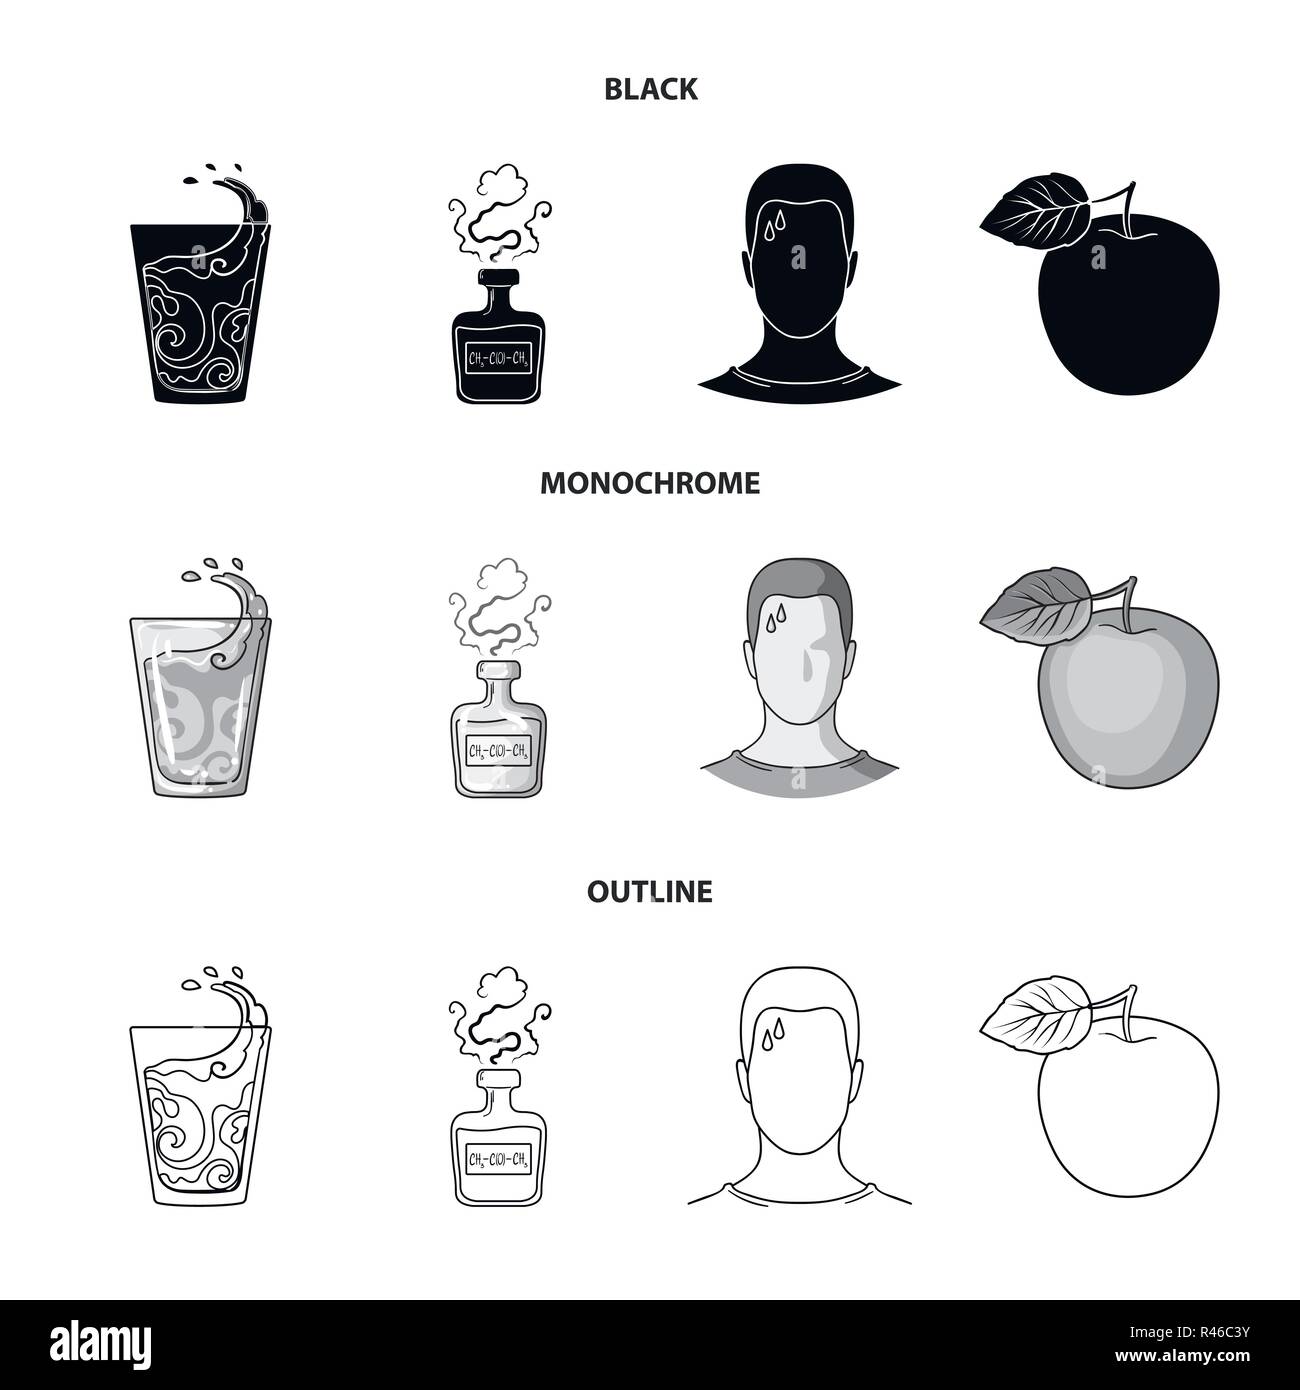 Ein Glas Wasser, eine Flasche Alkohol, ein Schwitzen Mann, ein Apple. Diabeth set Sammlung Icons in Schwarz, monochrom, Outline style Vektor Symbol lieferbar il Stock Vektor